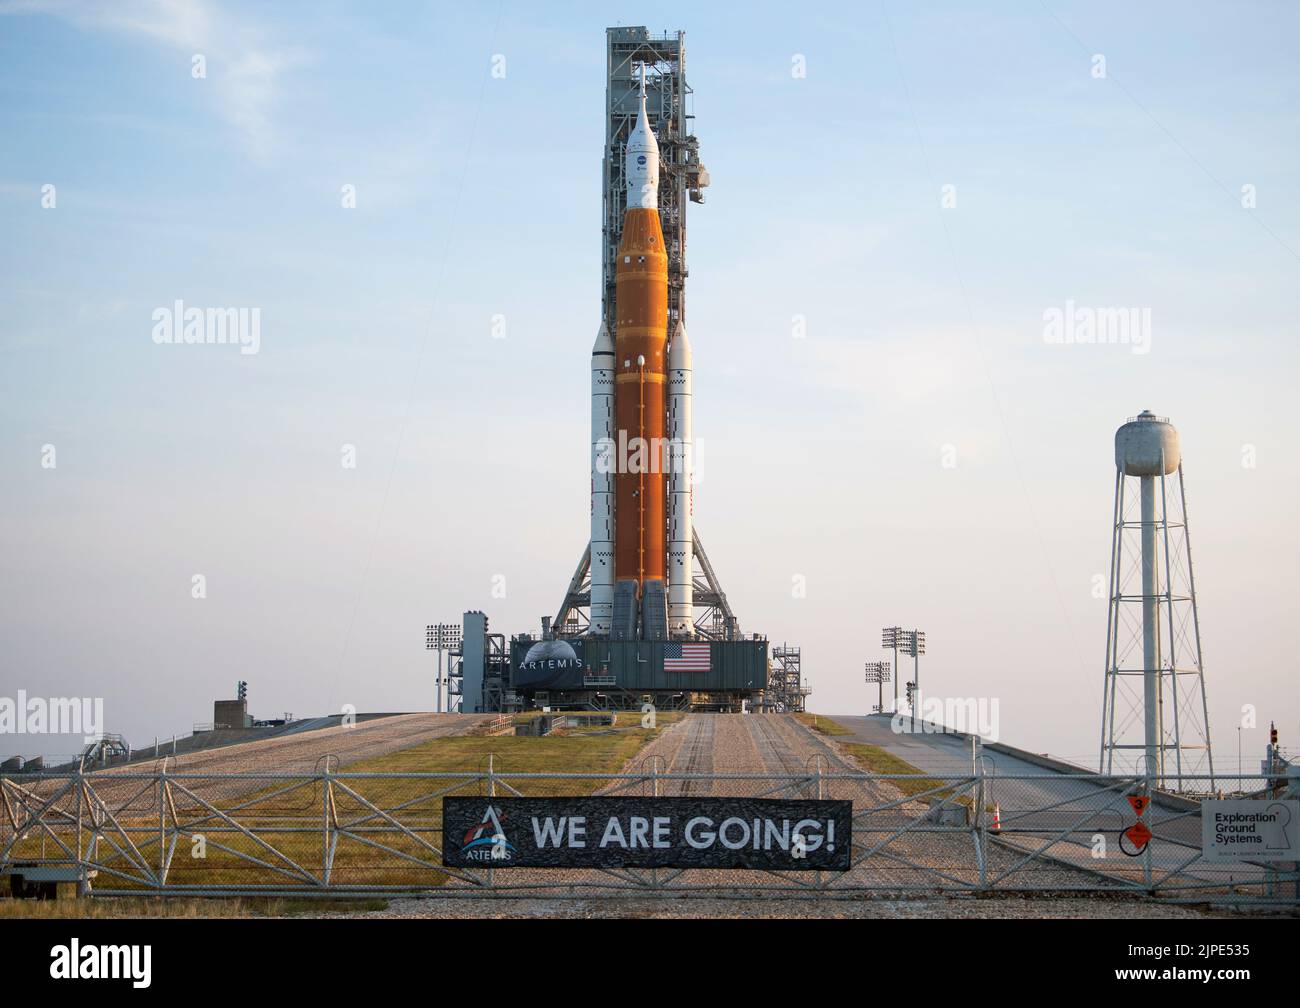 Florida, EE.UU. 16th de Ago de 2022. Artemis: La NASA prepara un cohete lunar gigante para el vuelo inaugural. El cohete Space Launch System (SLS) de la NASA con la nave espacial Orion a bordo es visto encima de un lanzador móvil en la plataforma de lanzamiento 39B, 17 DE AGOSTO de 2022, después de ser desplegado en la plataforma de lanzamiento del Centro Espacial Kennedy de la NASA en Florida. La misión Artemis I de la NASA es la primera prueba integrada de los sistemas de exploración del espacio profundo del organismo: La nave espacial Orion, el cohete SLS y los sistemas terrestres de apoyo. 17 Agosto 2022 Crédito: NASA/Joel Kowsky / Alamy Live News via Digitaleye Crédito: J Marshall - Tribaleye Images/Alamy Li Foto de stock